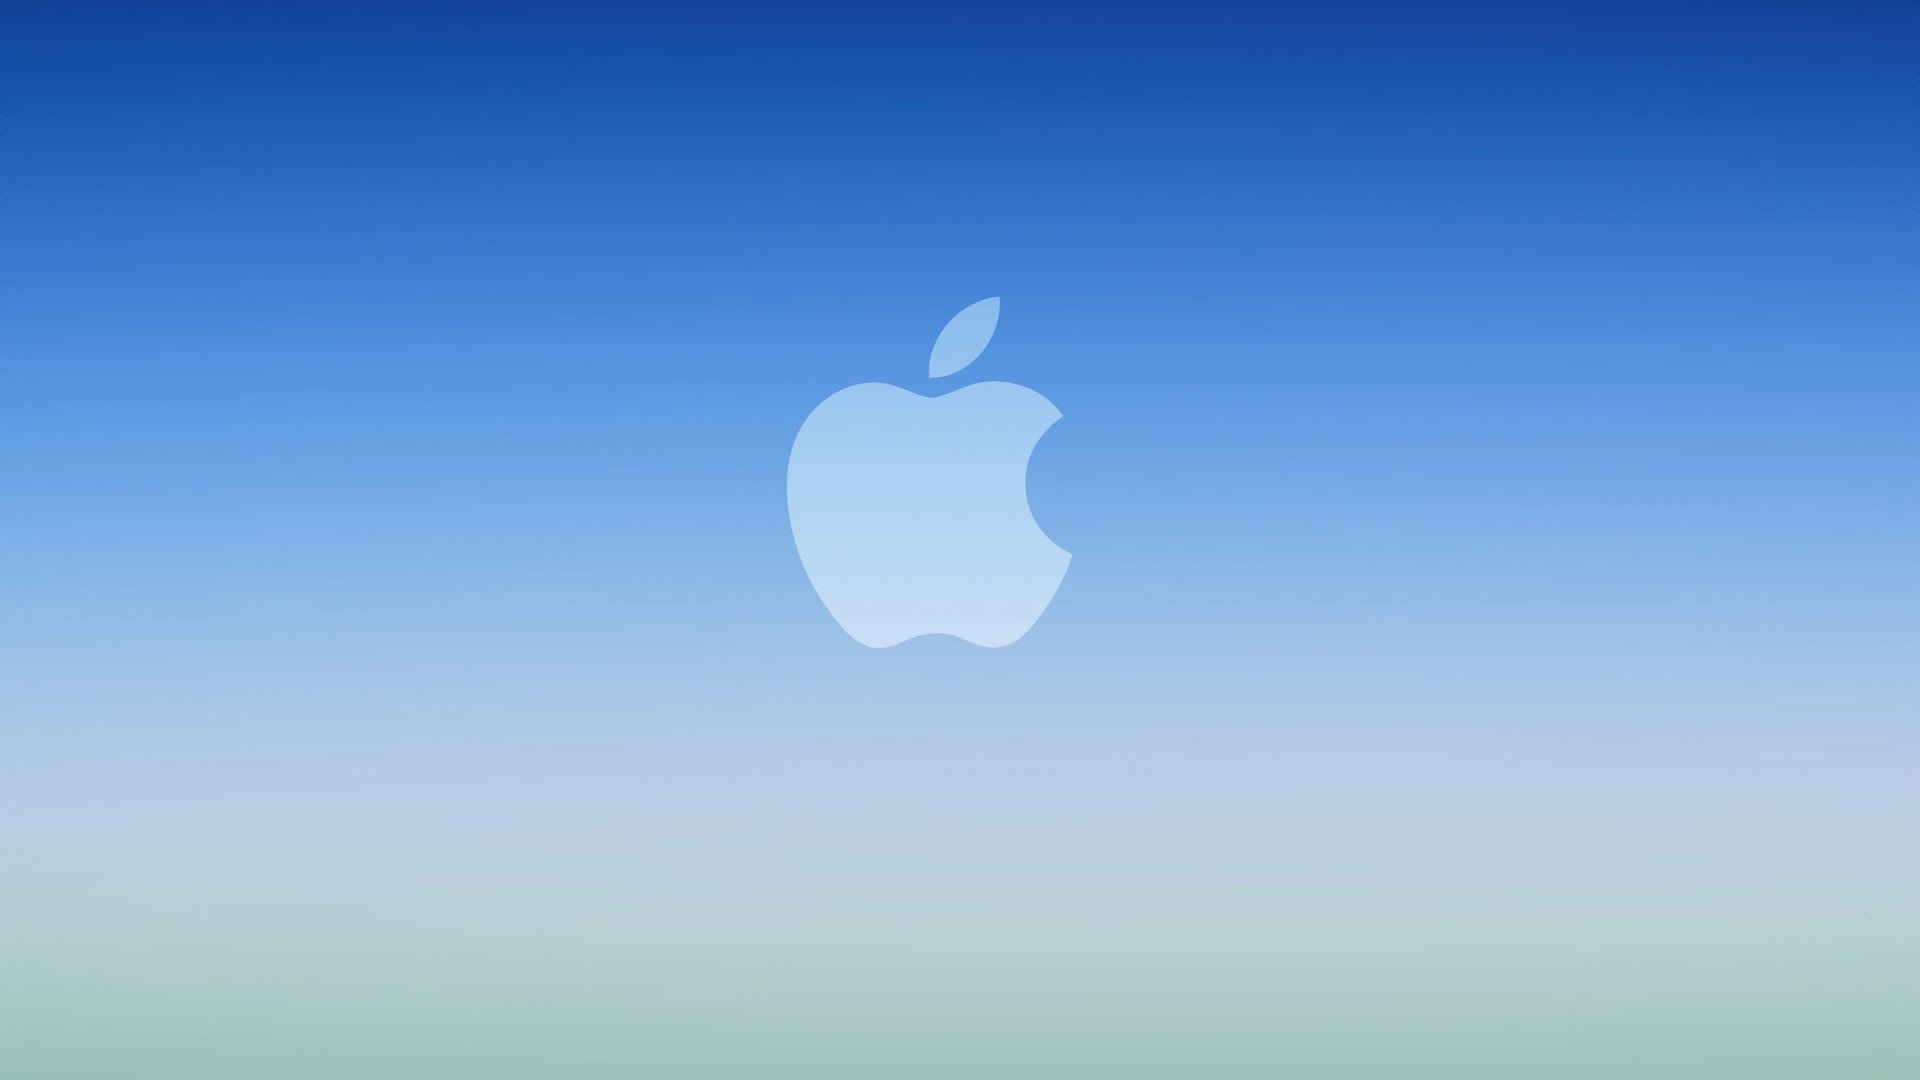 Делать обои на айфон. Логотип Apple. Обои Apple. Обои на айфон. Обои Apple iphone.